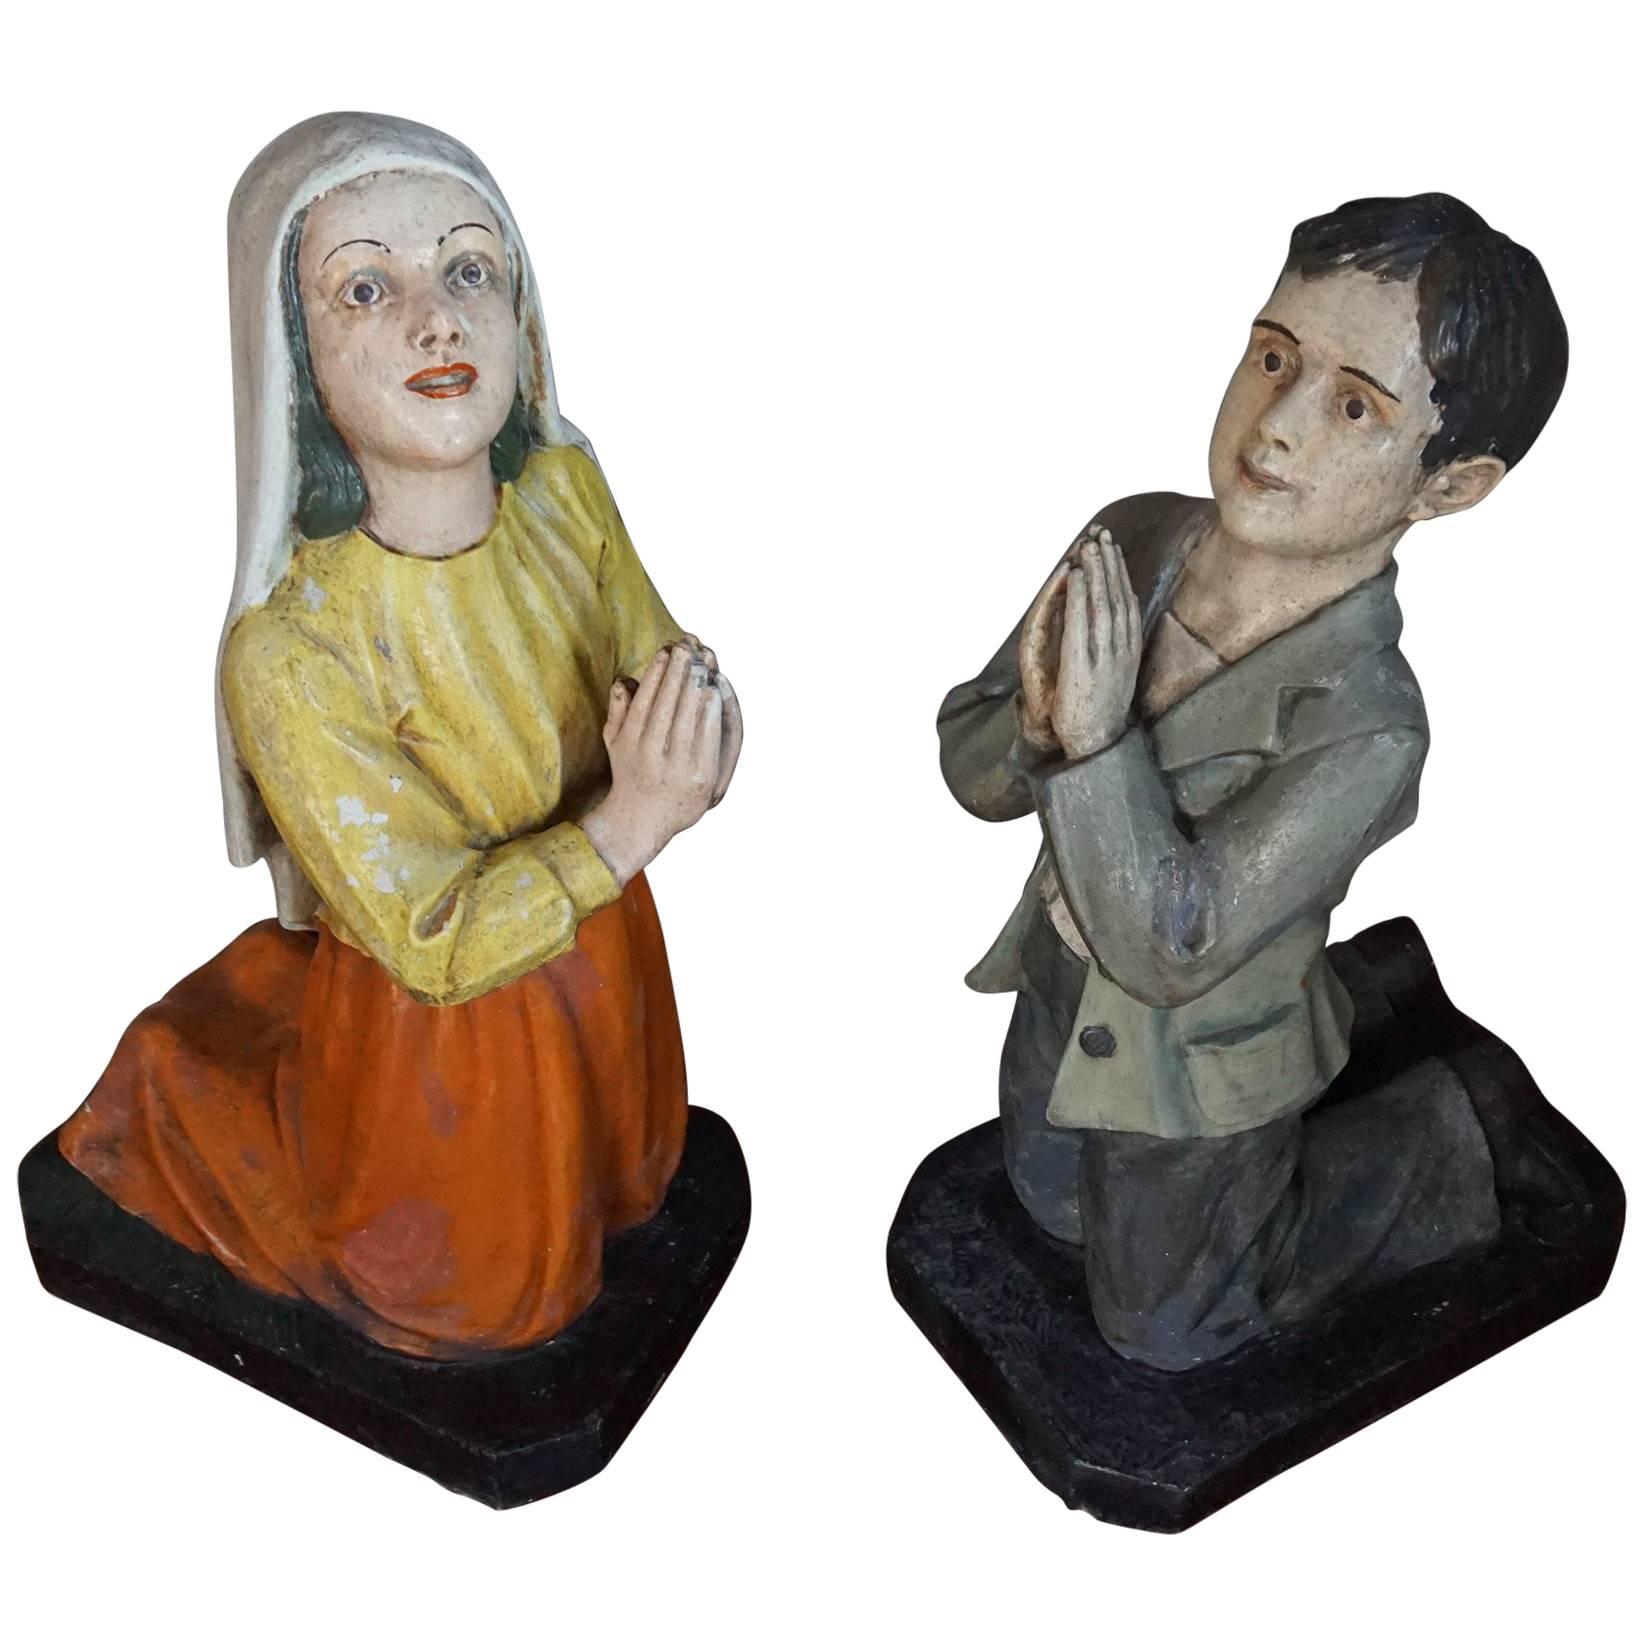 Devotional Statues / Religious Sculptures of St. Francisco de Jesus Marto & More